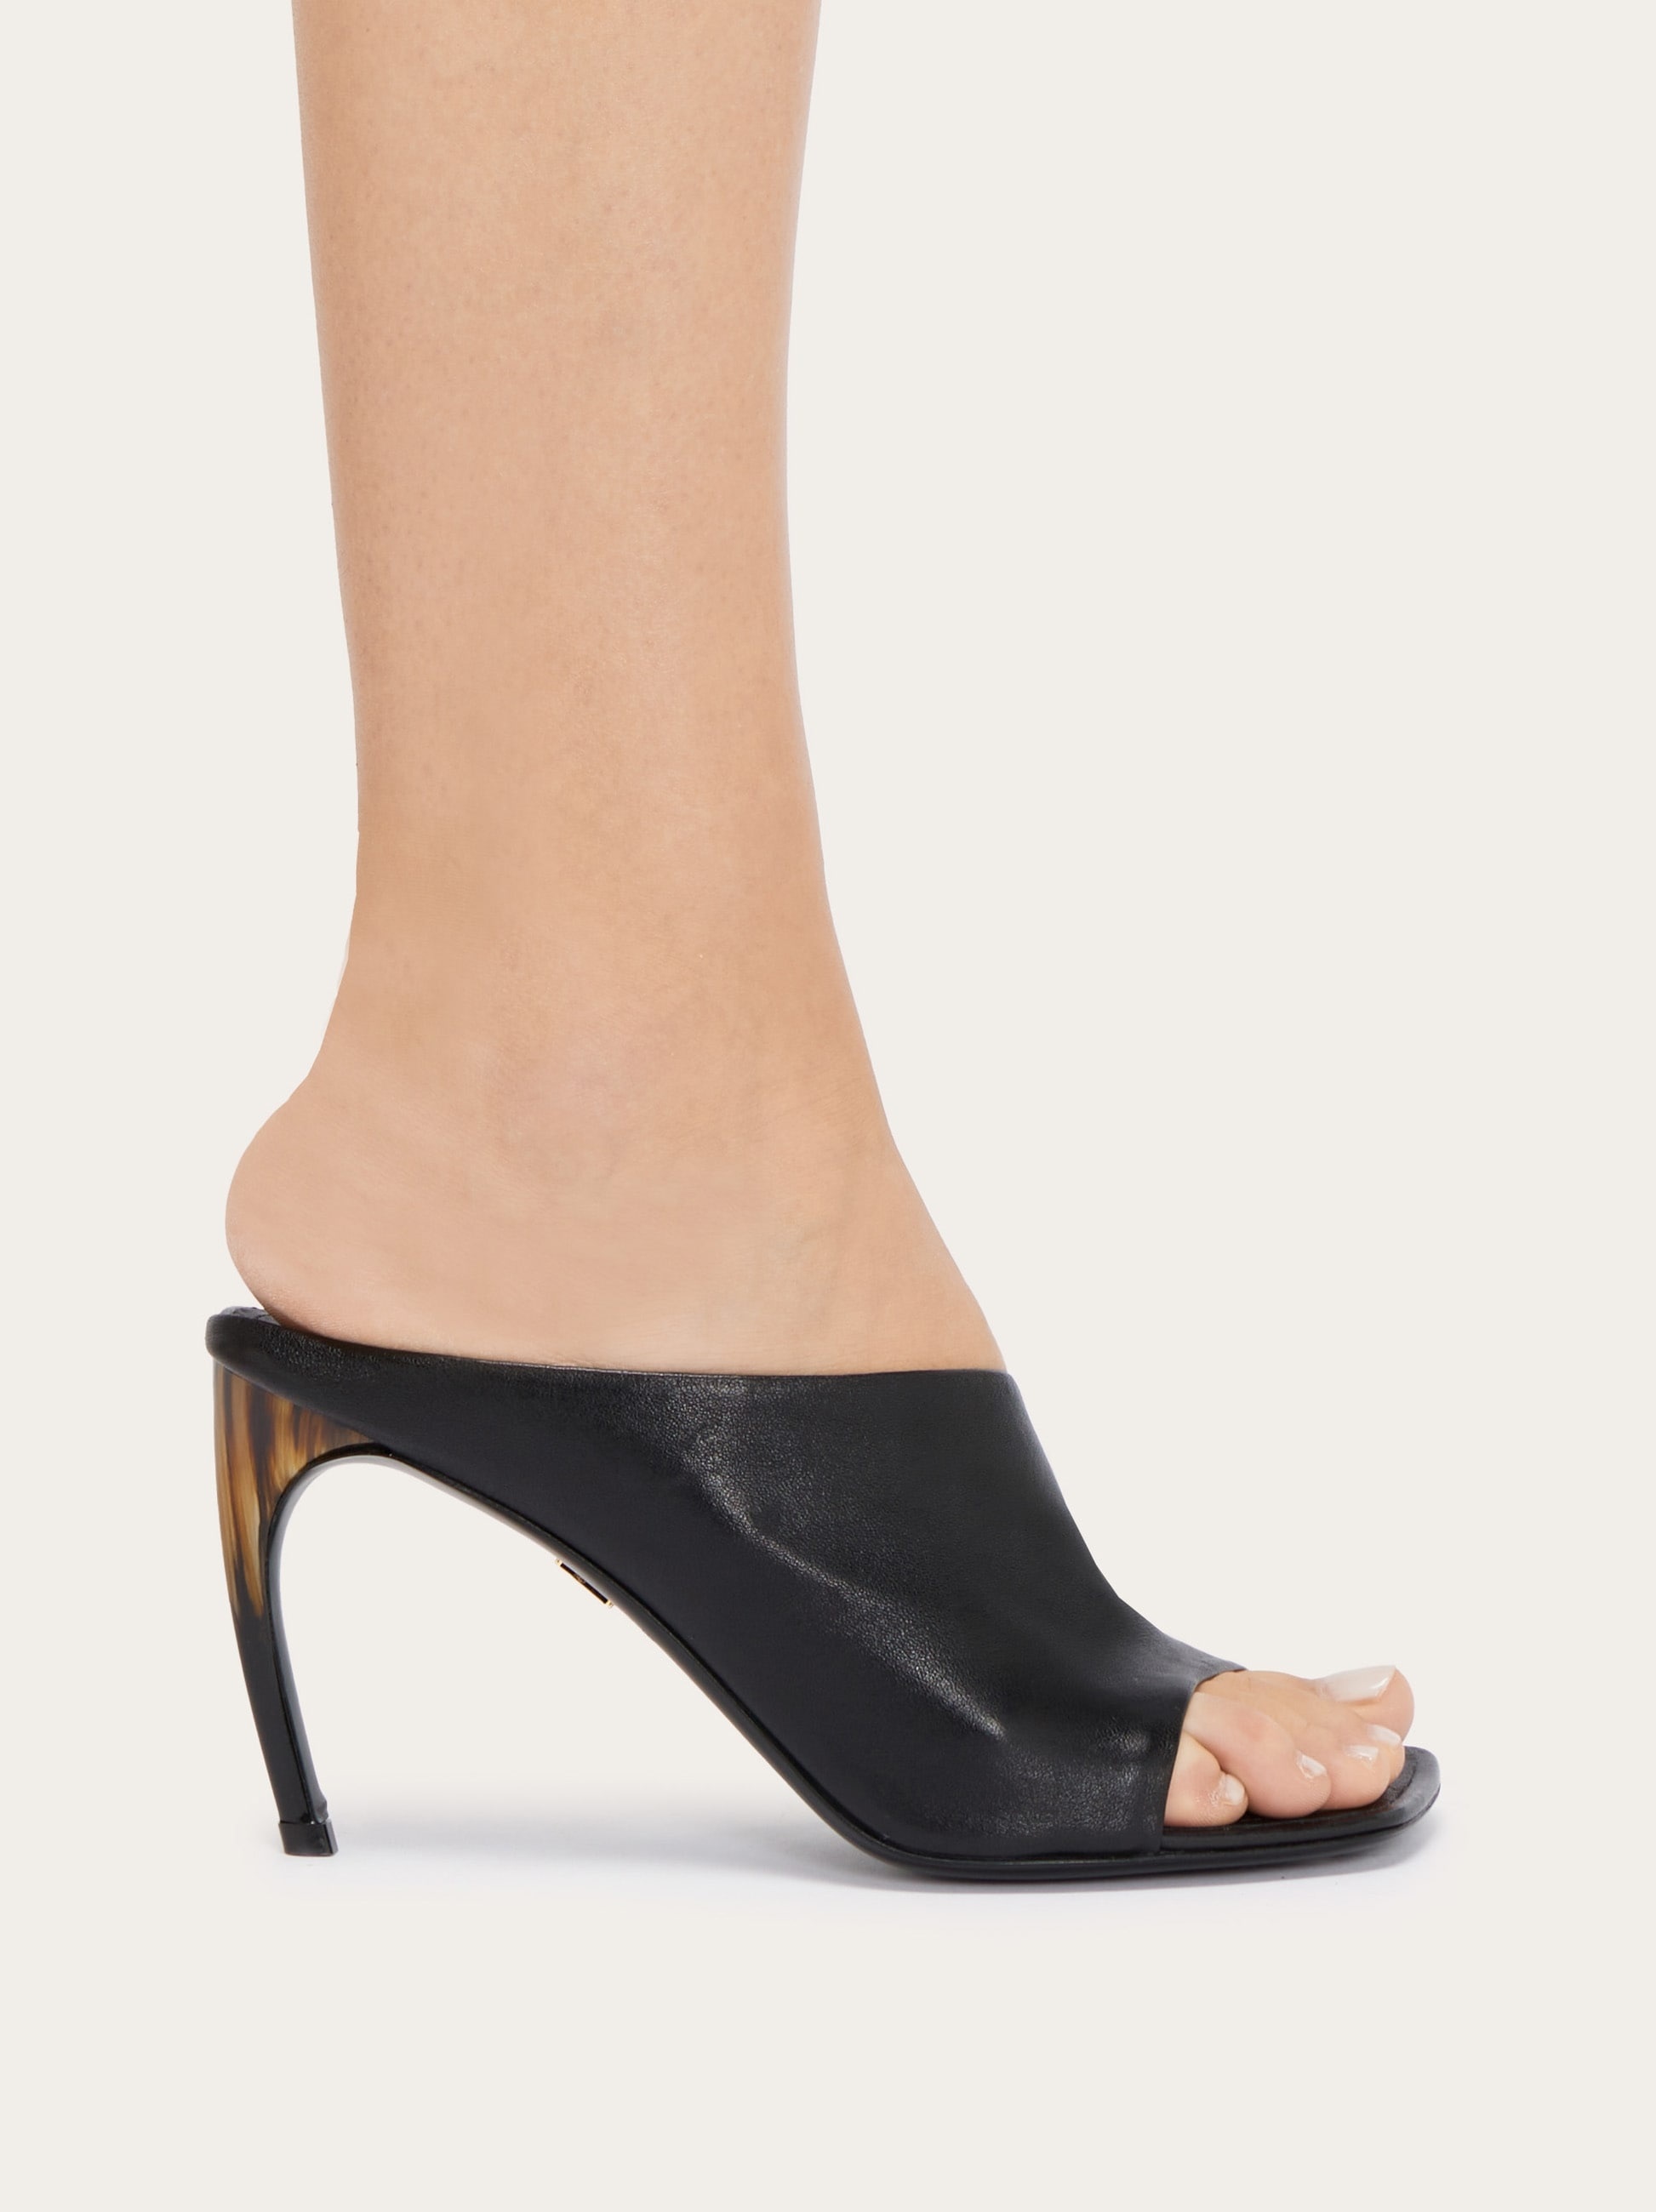 Curved heel slide - 3